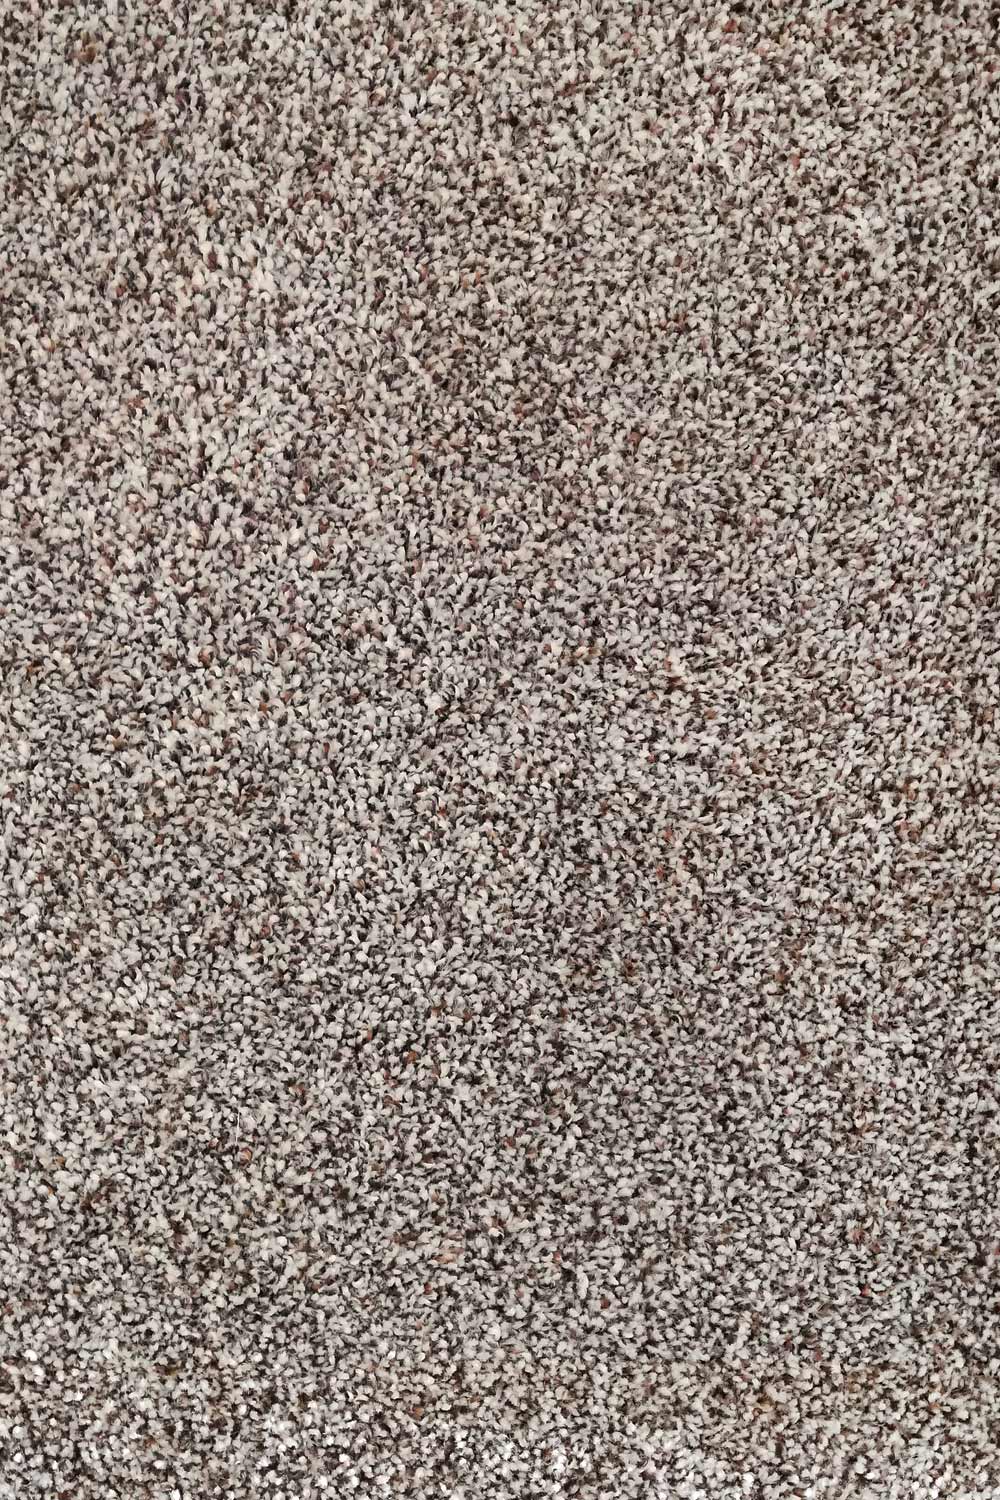 Metrážny koberec Dalesman 68 500 cm